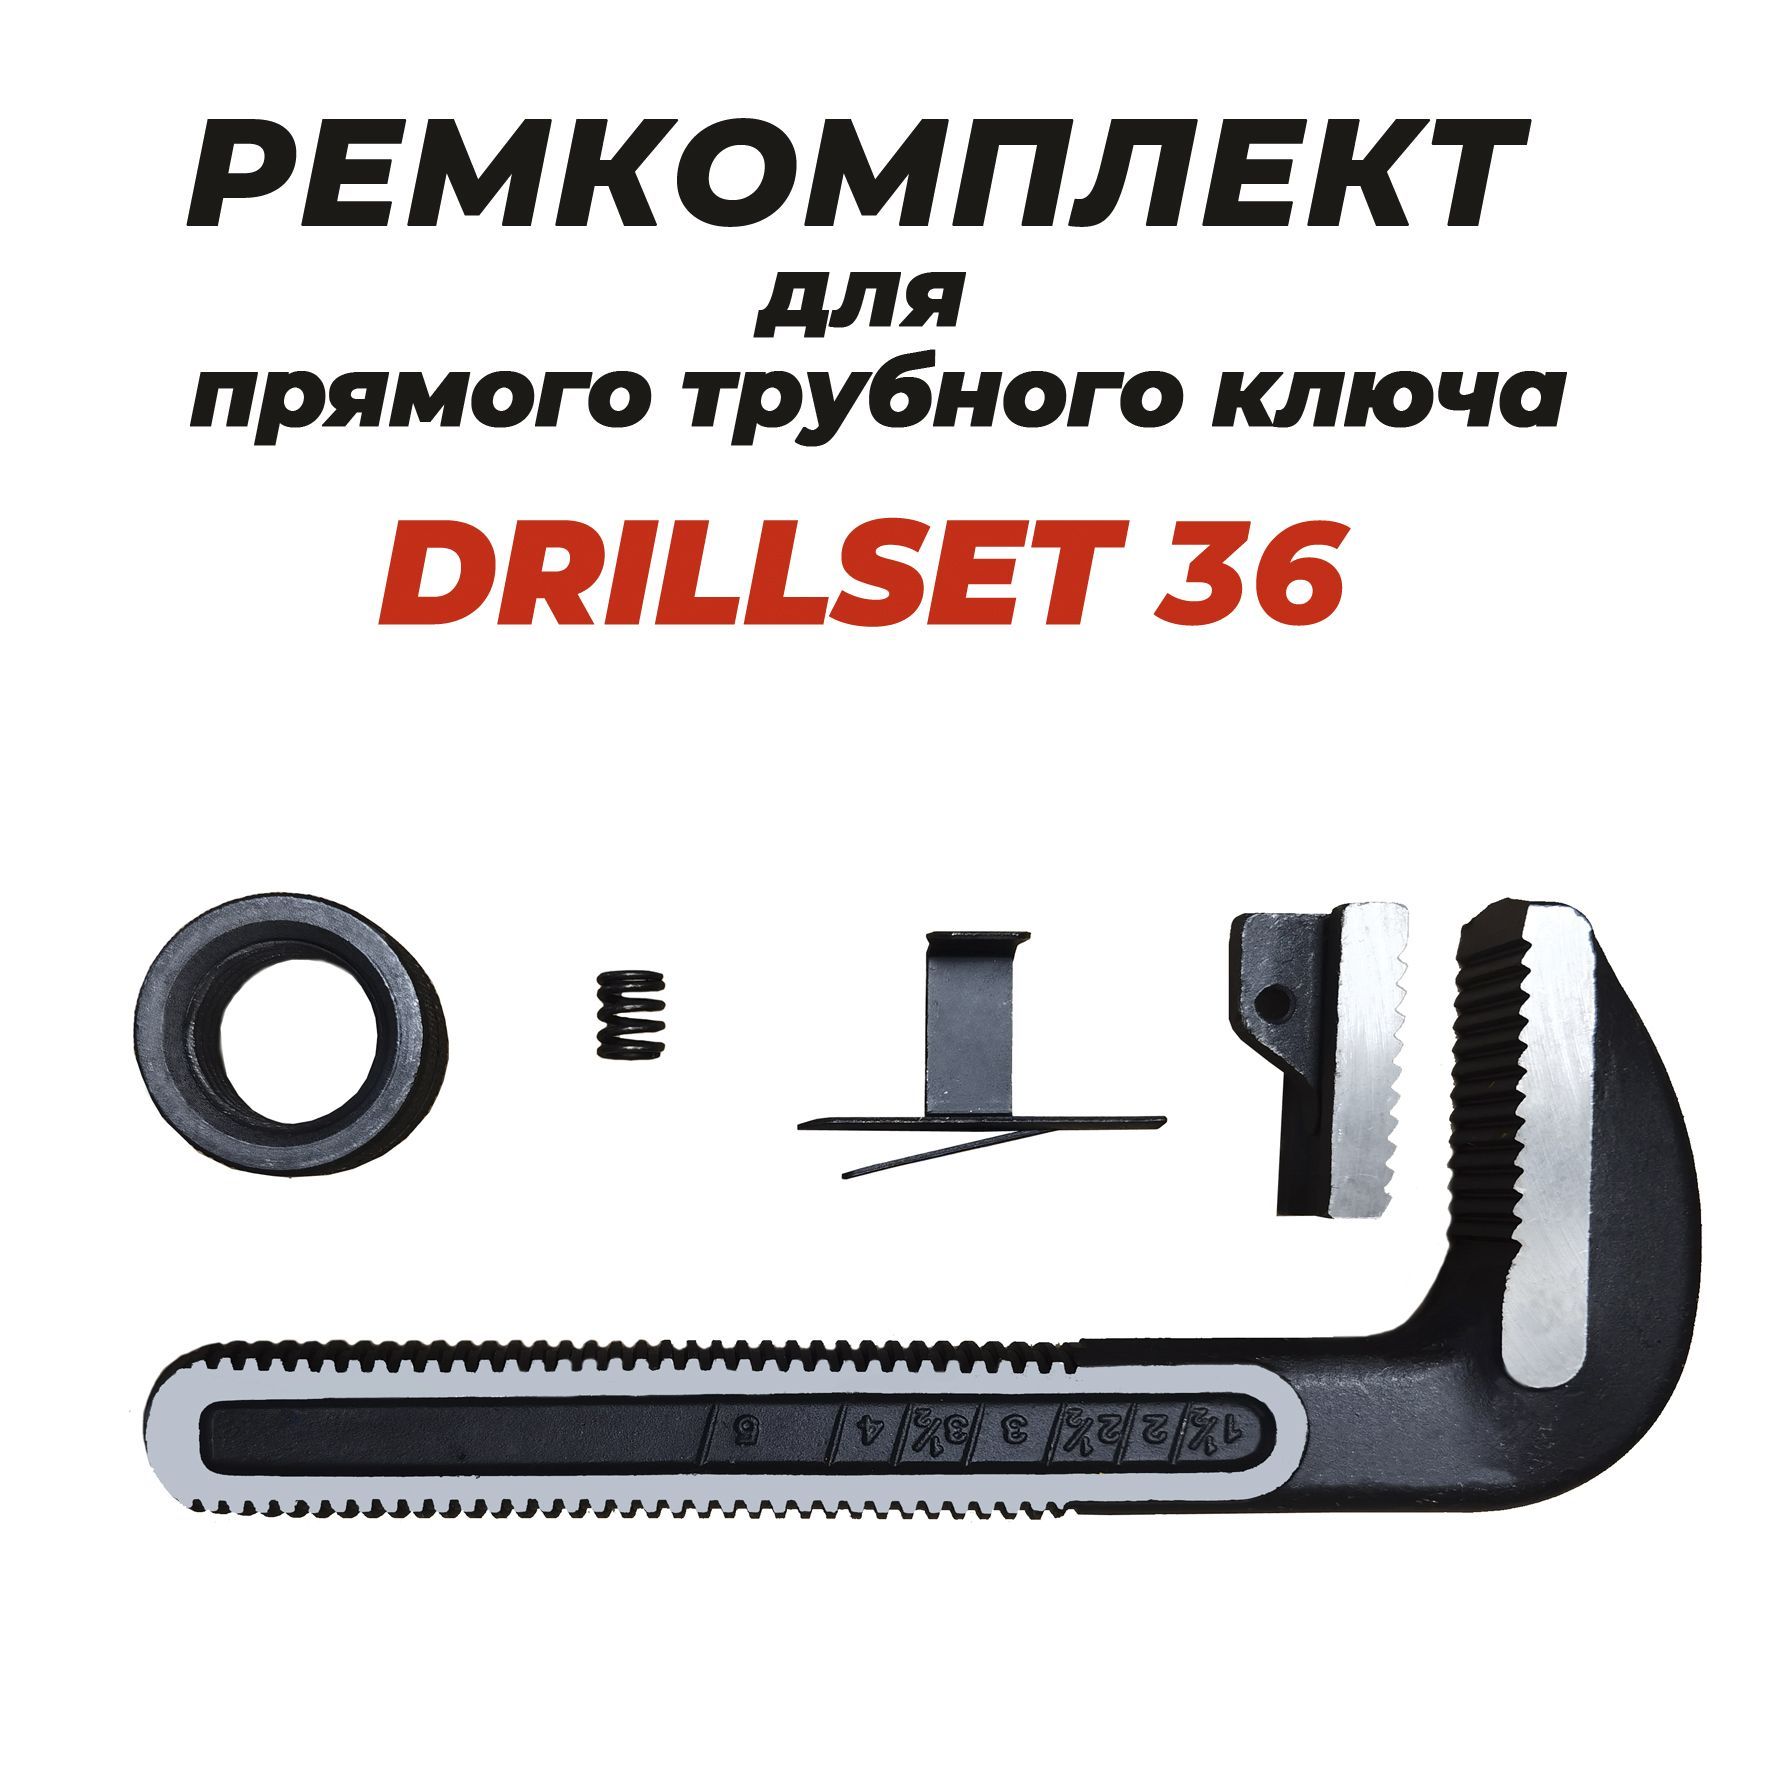 Ремкомплект для прямого трубного ключа DRILLSET36 нижняя щека для ключа кшс ridgid